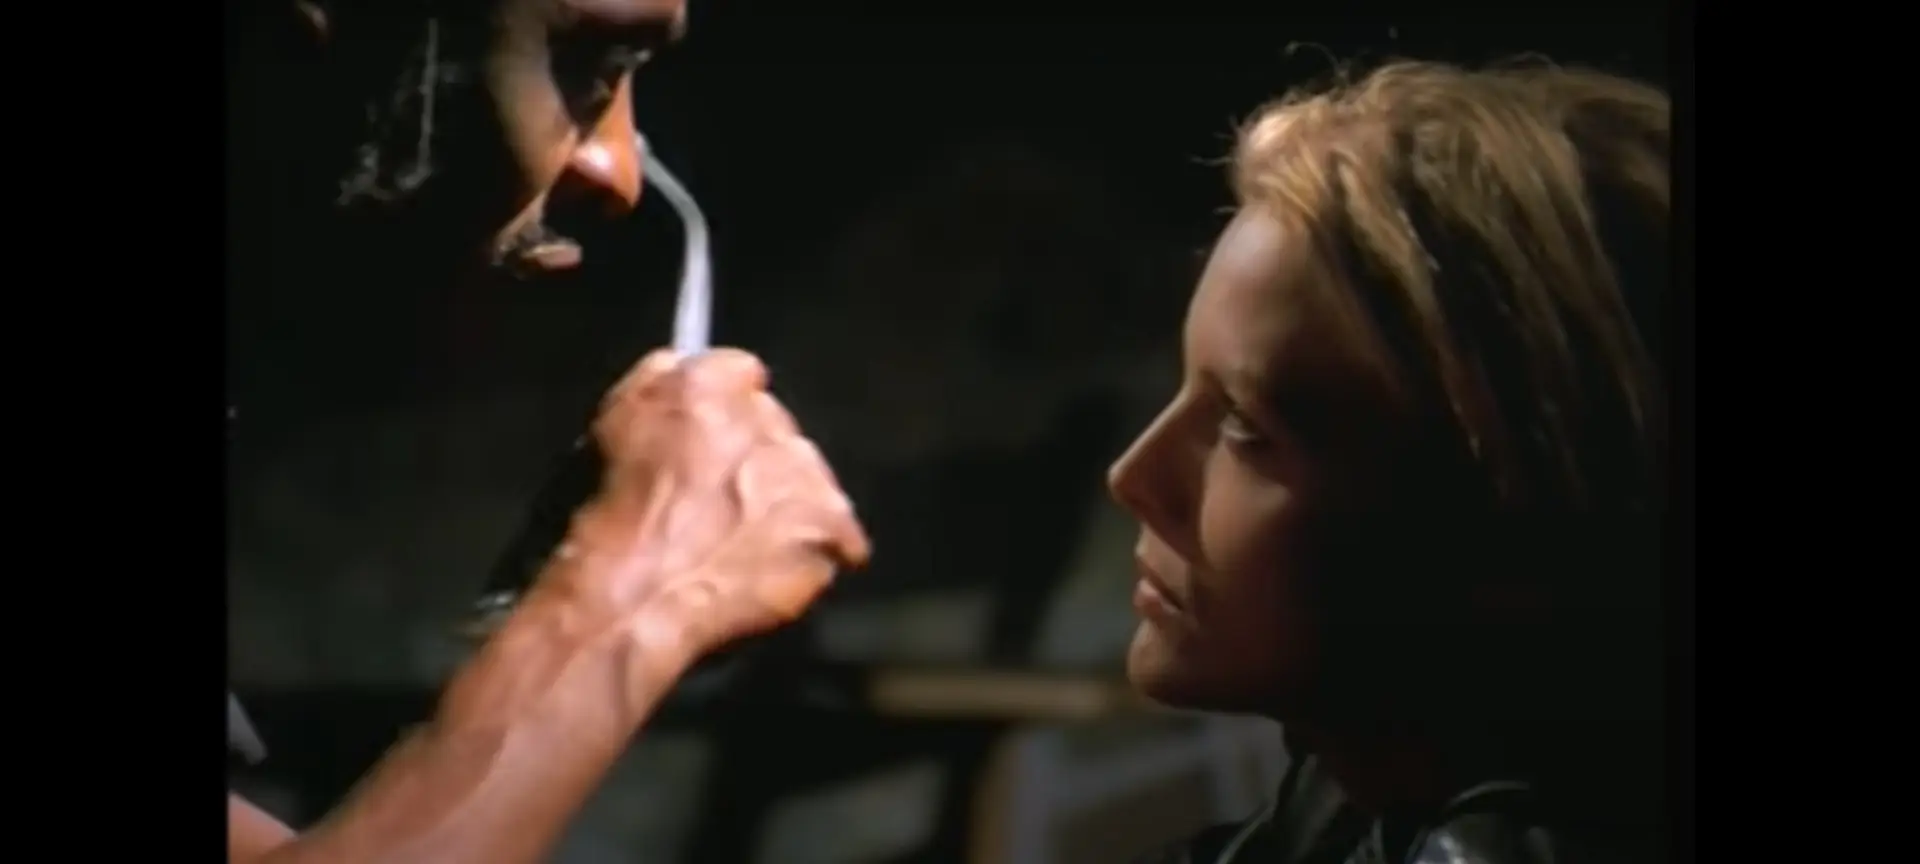 Michelle Pfeiffer comovida com morte de Coolio: “O nosso filme foi um sucesso por causa da 'Gangsta's Paradise'”